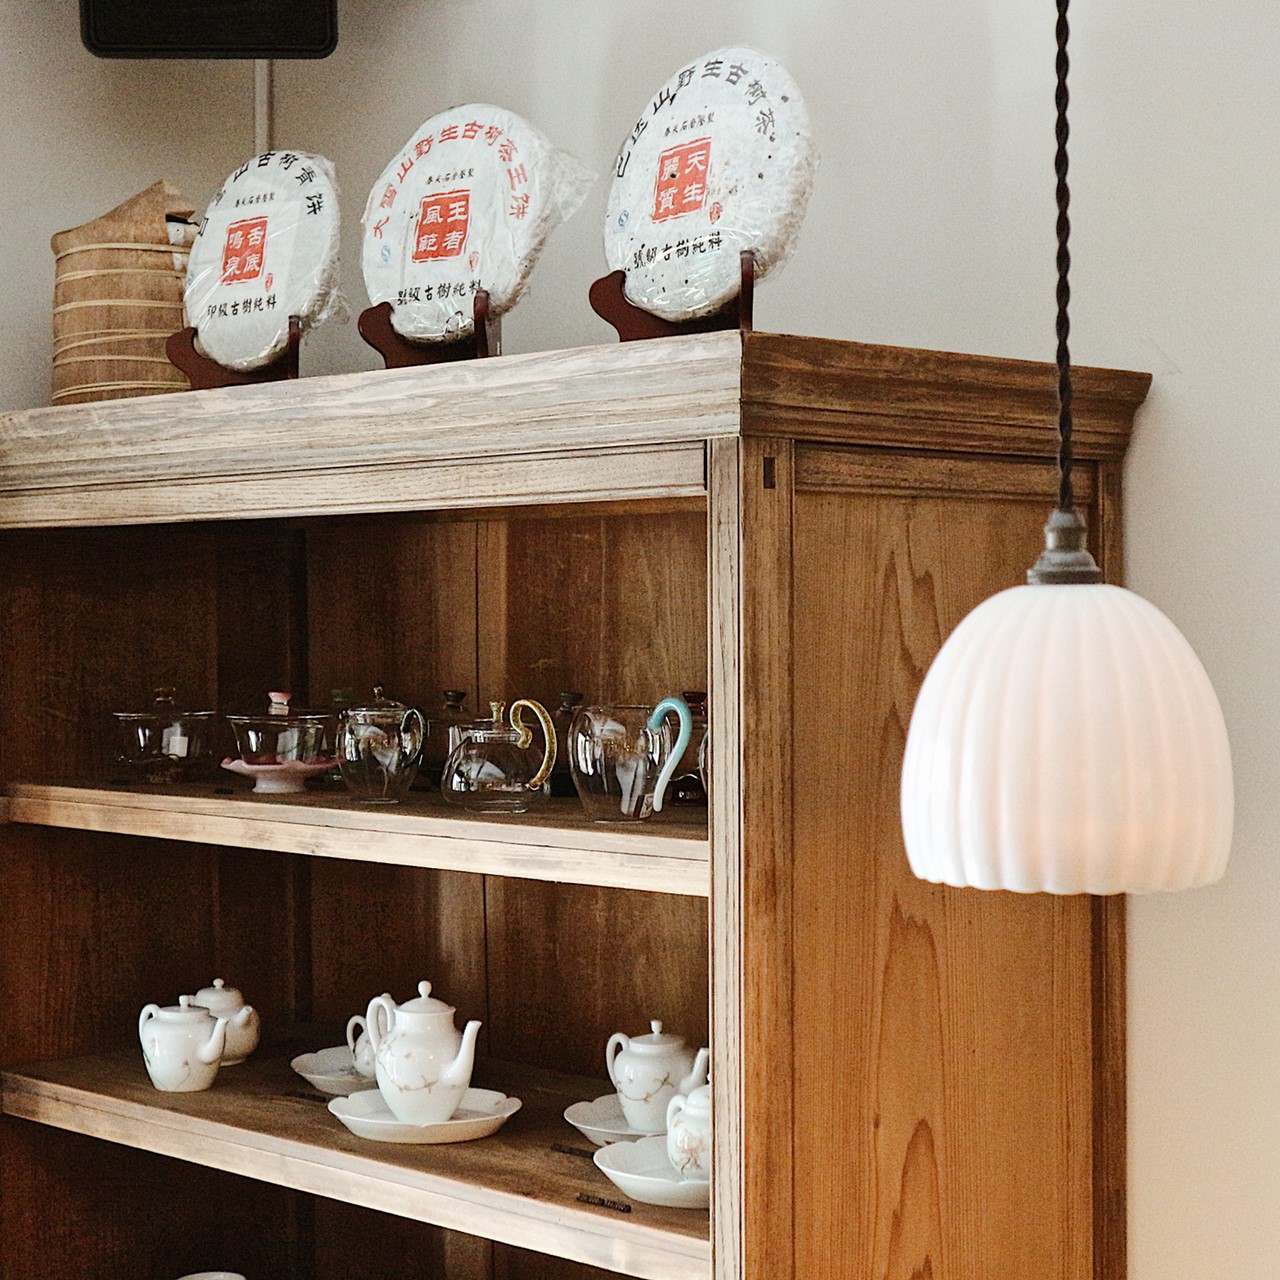 販売する台湾の茶器ブランド〈自慢堂〉はファン垂涎の品。店内メニューでも使用し、お茶のおいしさを盛り上げている。